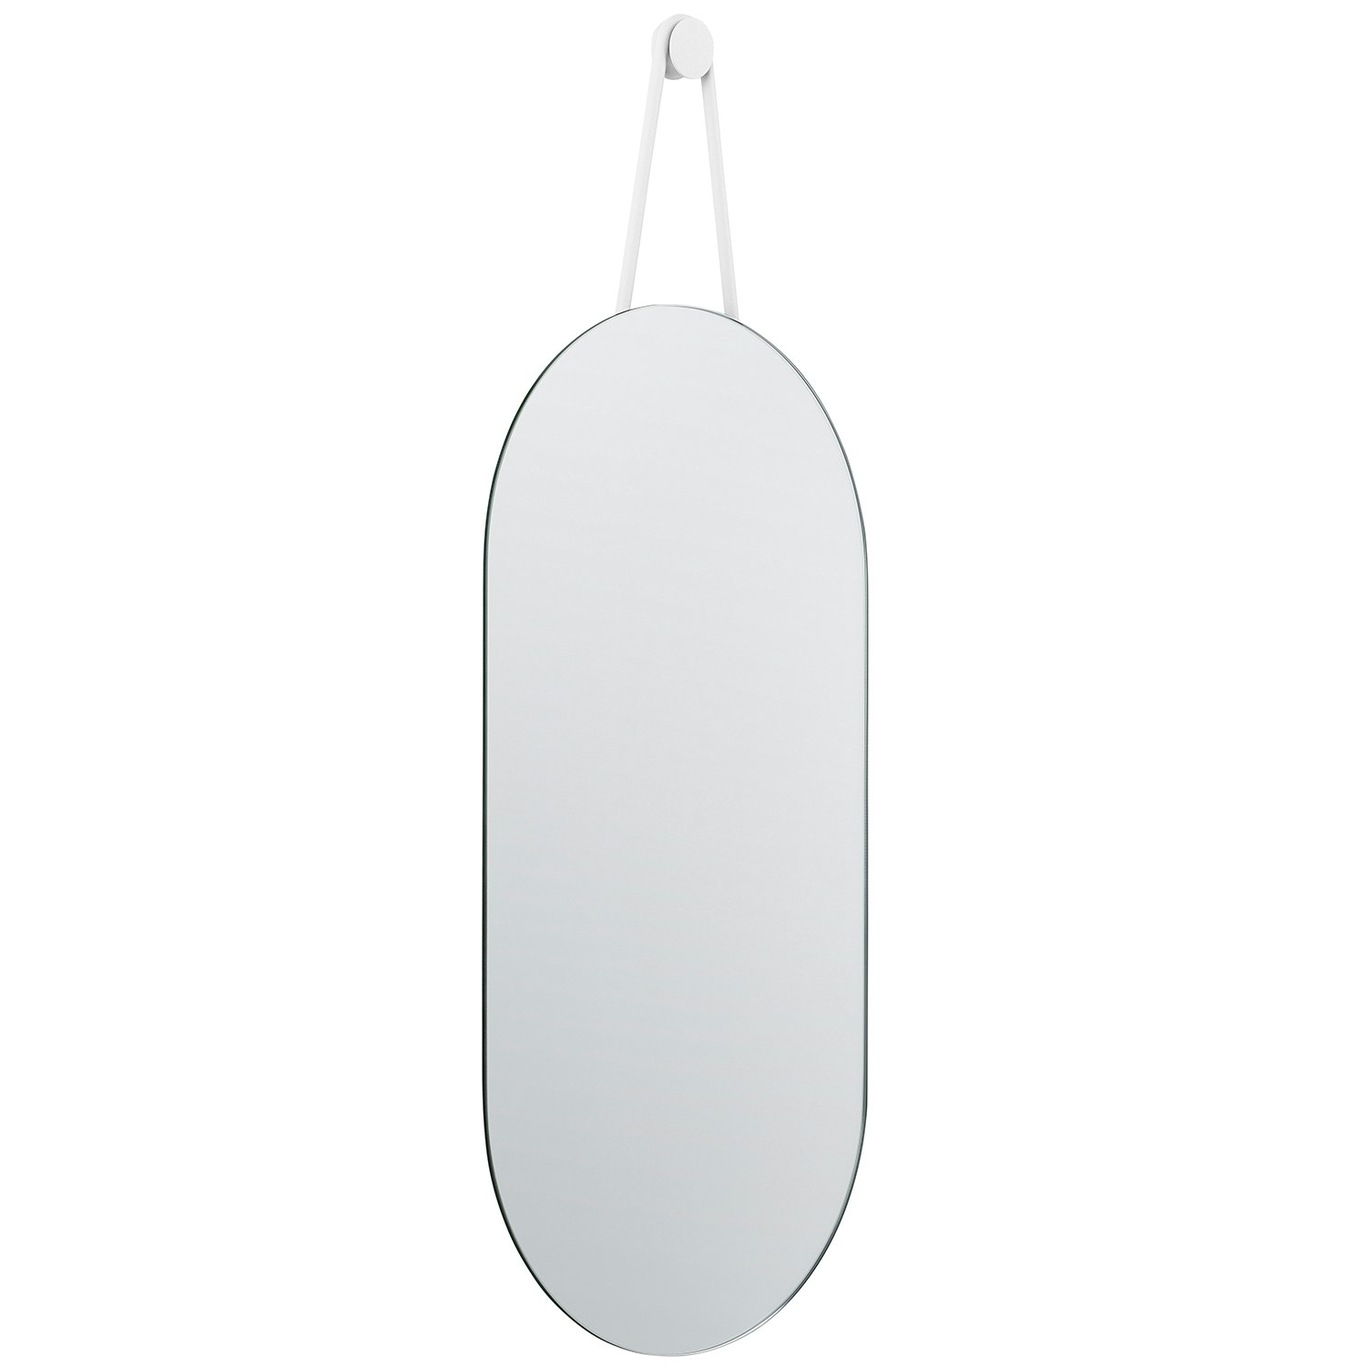 A-Wall Spejl, Hvidt 30x60 cm